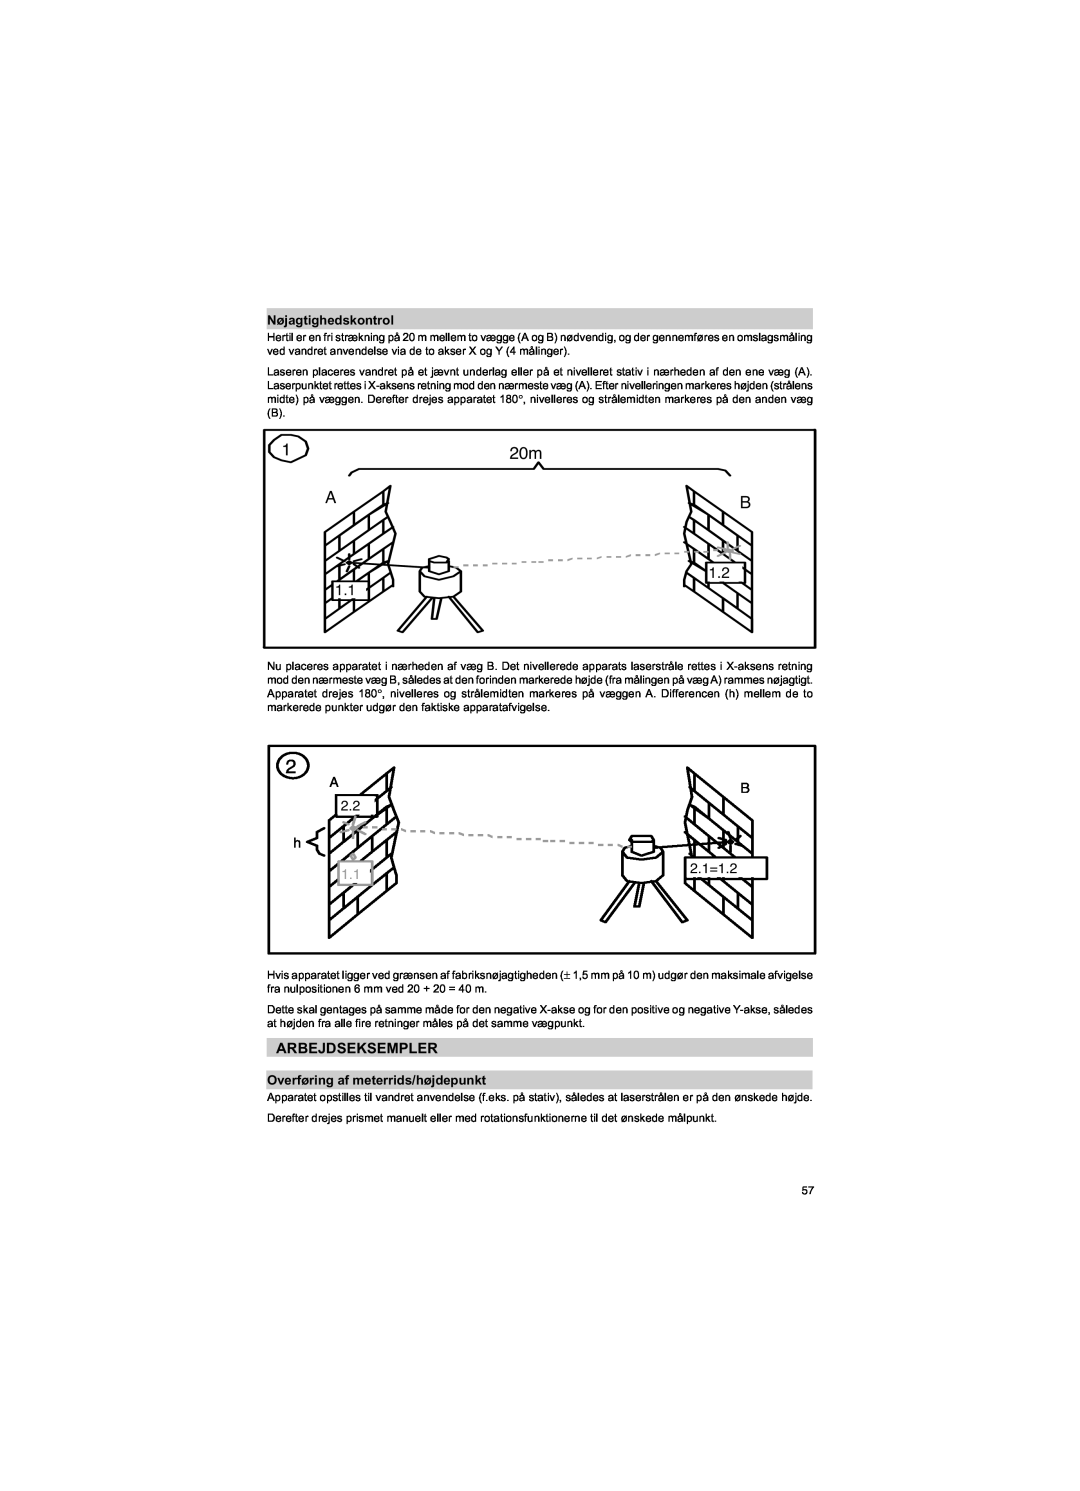 Trimble Outdoors HV301 manual Arbejdseksempler, Nøjagtighedskontrol, Overføring af meterrids/højdepunkt, B 2.1=1.2 